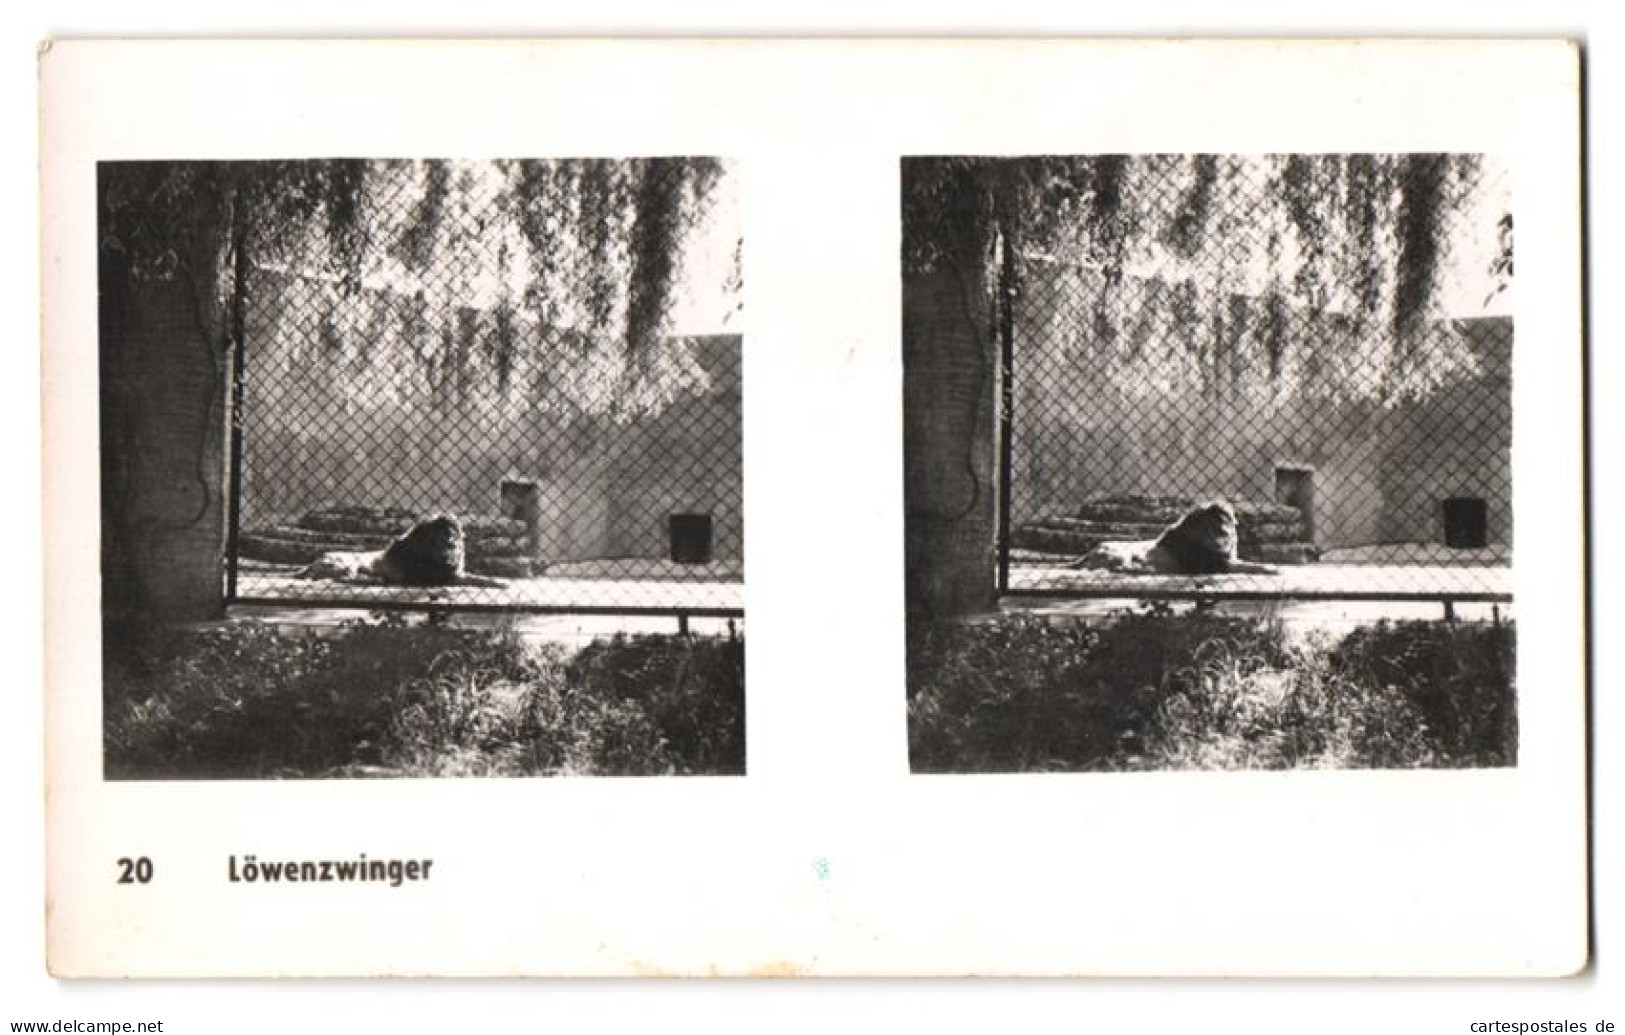 20 Stereo-Fotografien mit Stereobetrachter Omnia-Verlag Tiere Serie Aus dem Zoo 